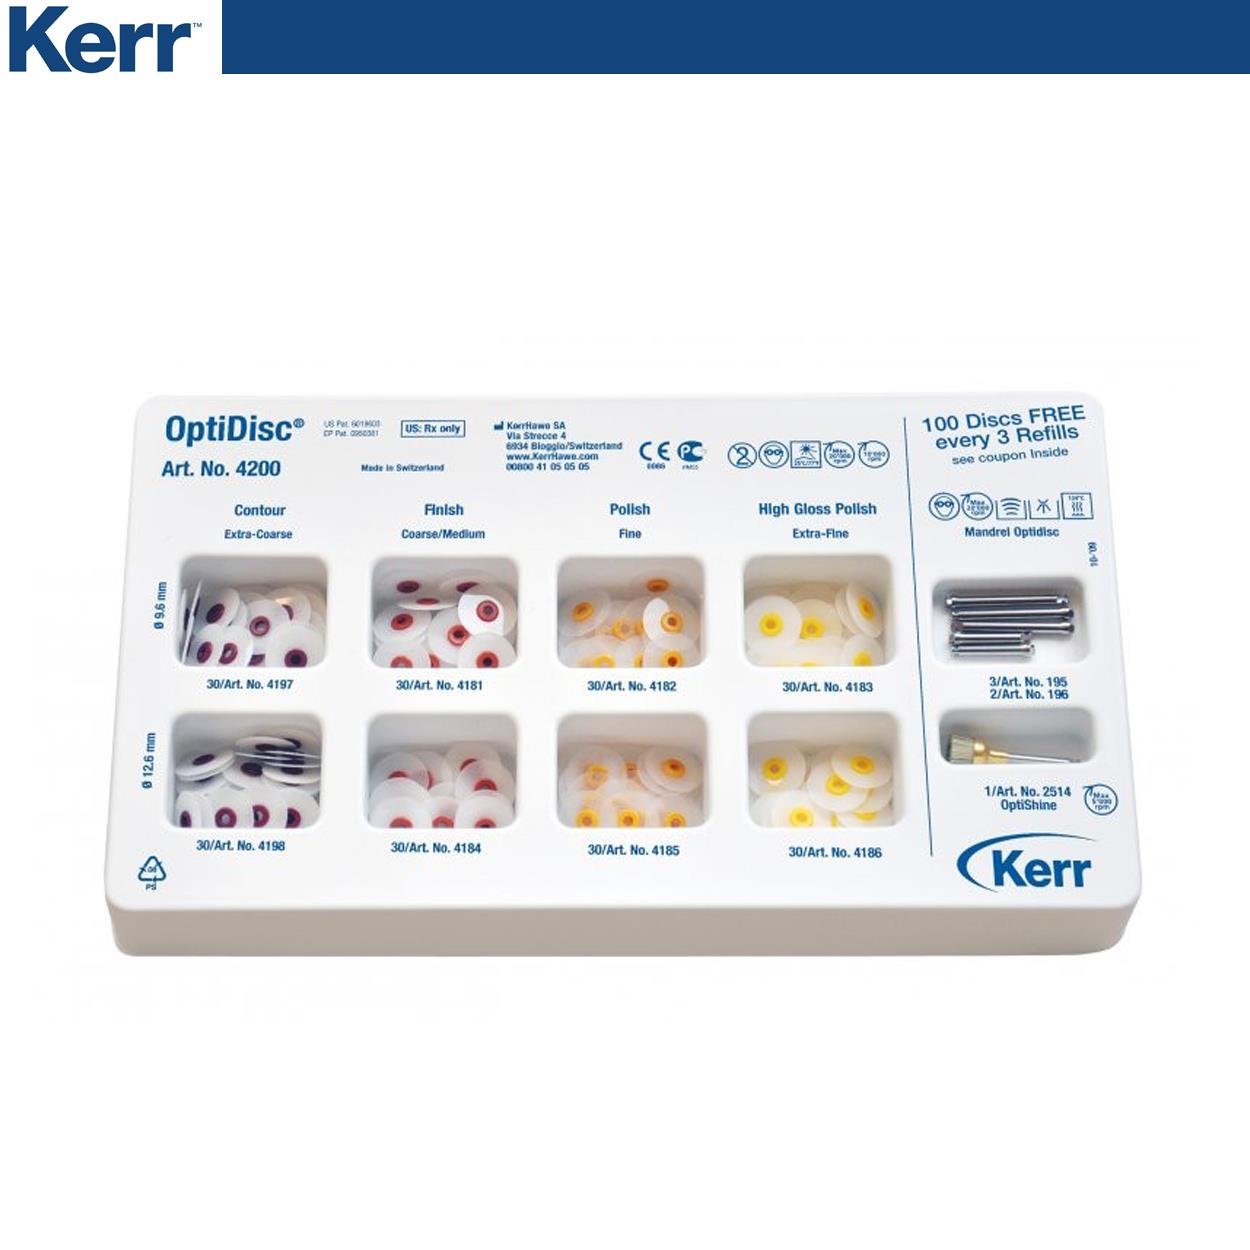 DentrealStore - Kerr Optidisc Finishing and Polishing System